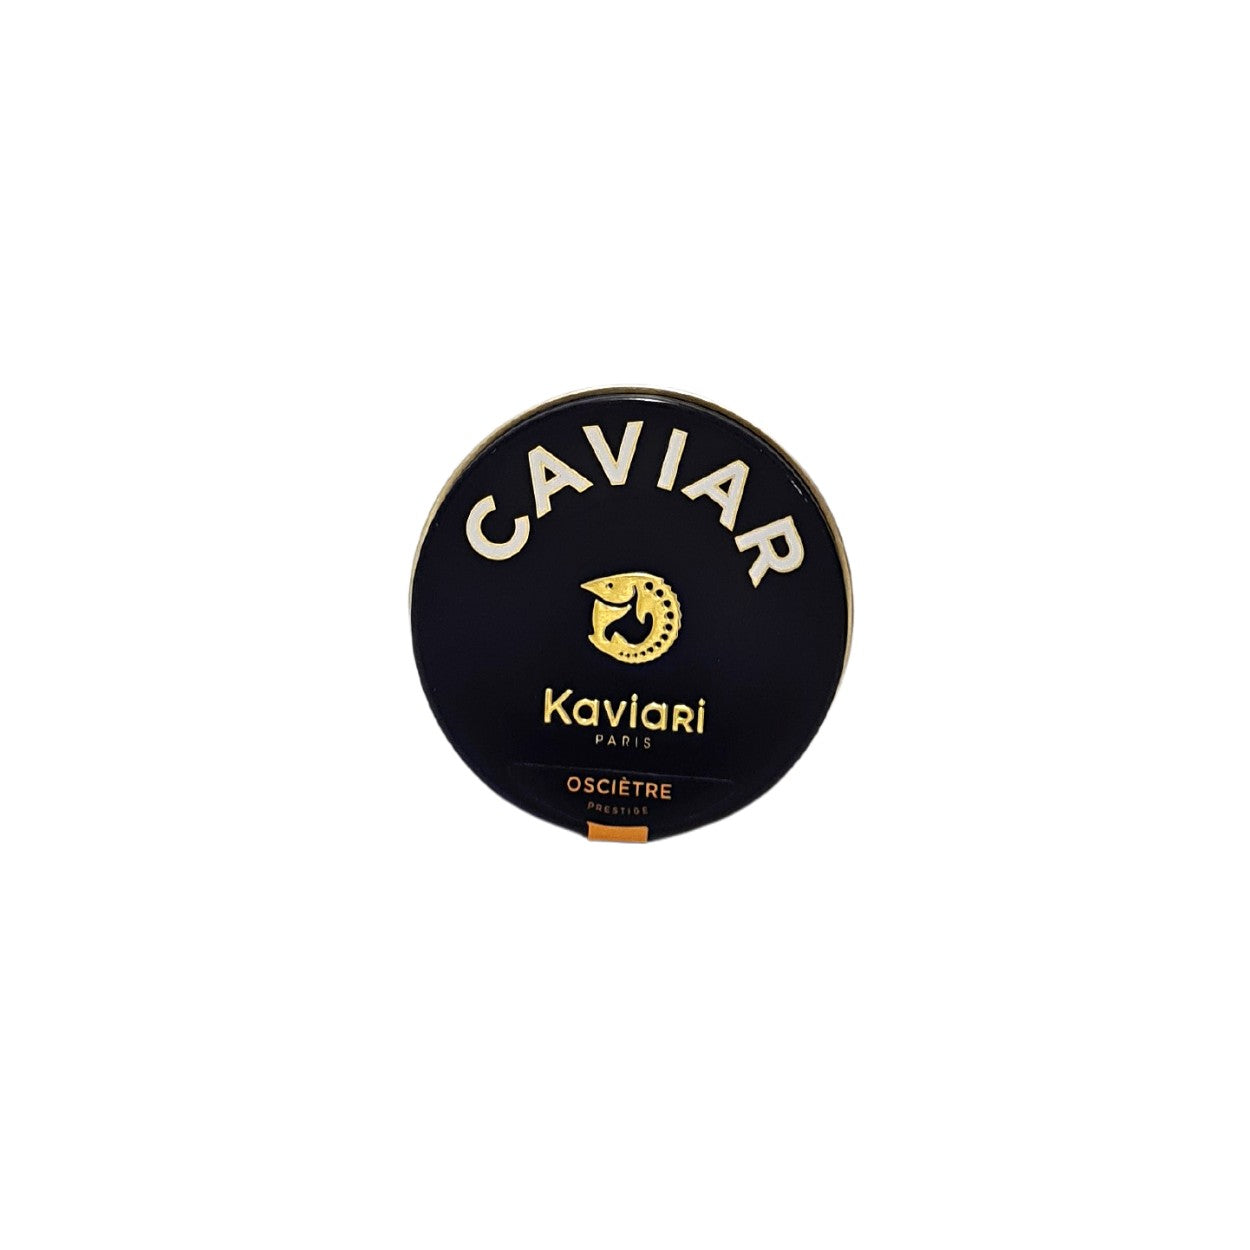 Caviar Kaviari Ossetra. Kaviari